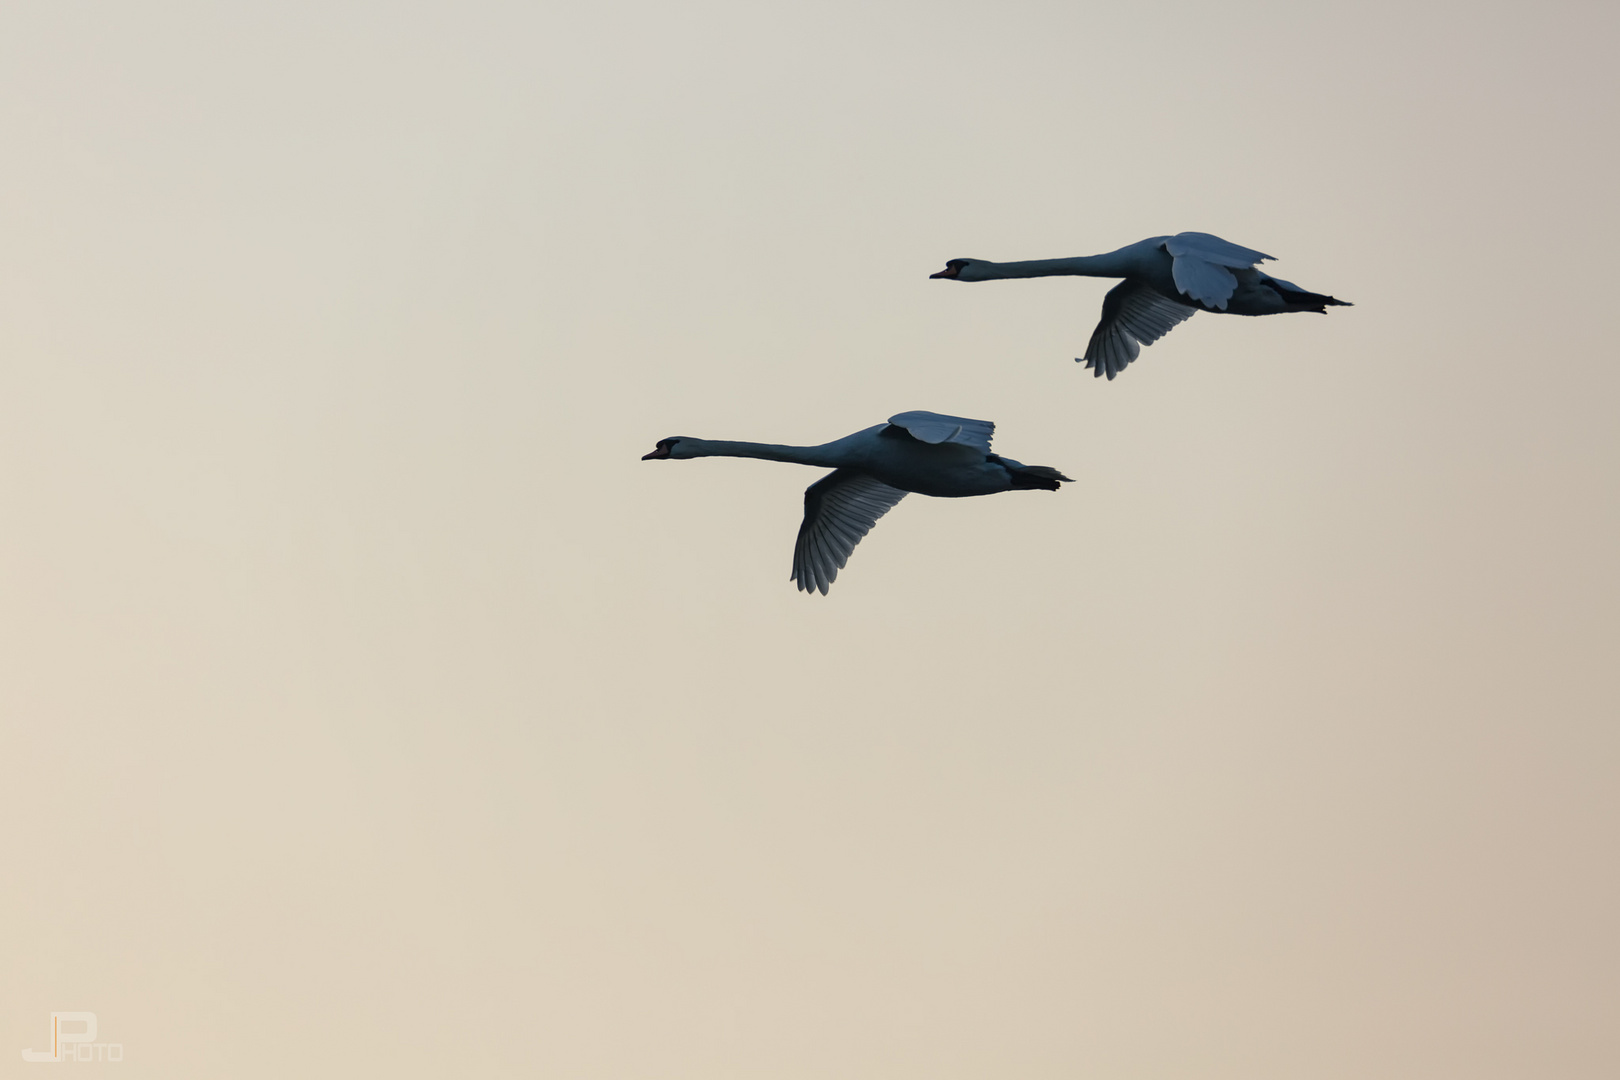  Schwäne im Formationsflug - swans in formation flight